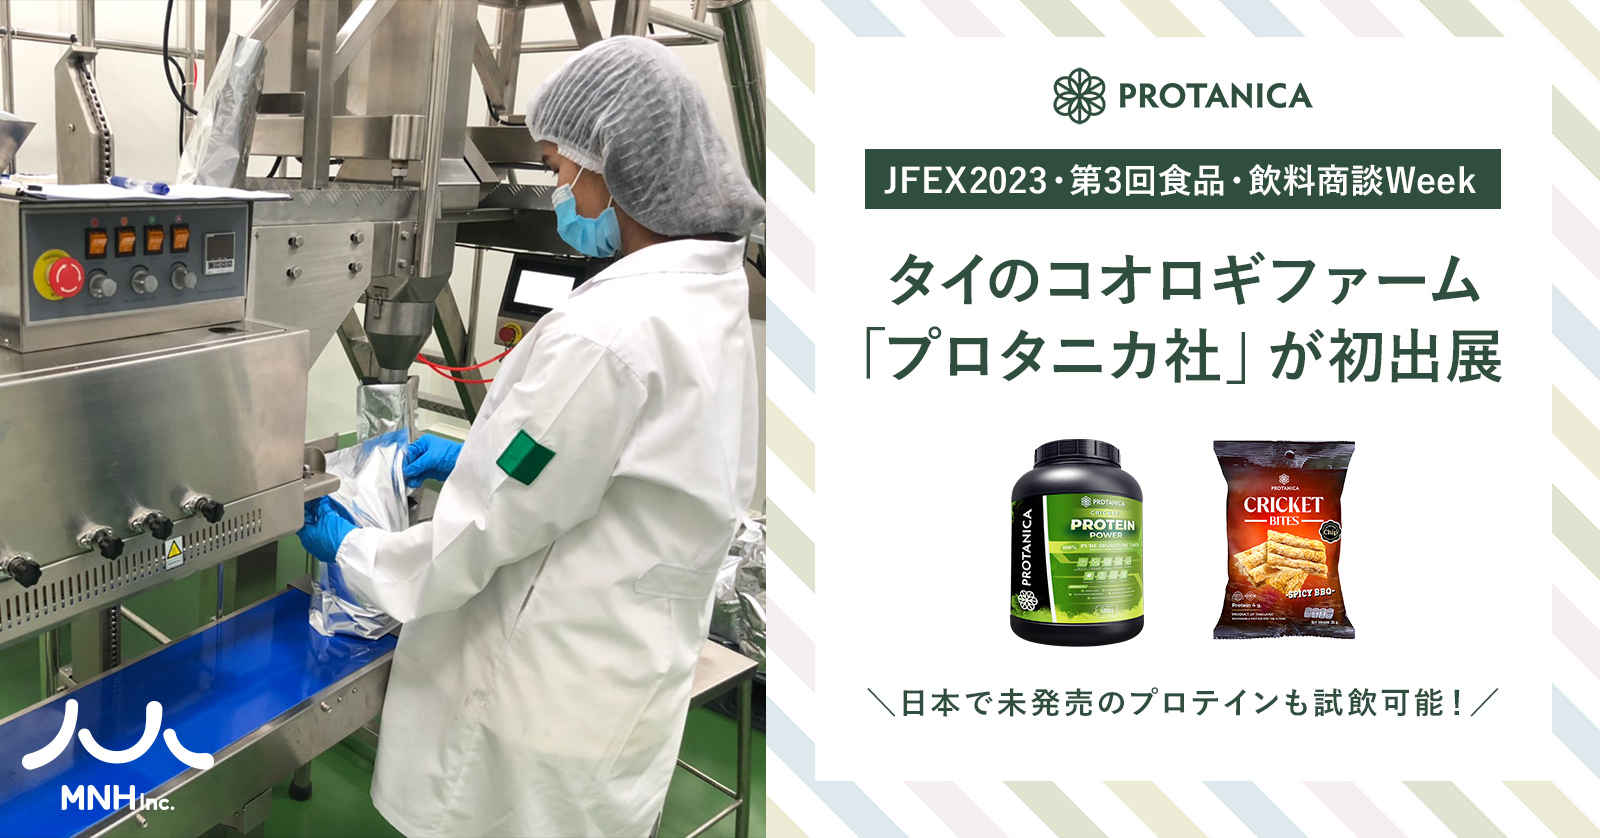 6月21日（水）から開催の第3回 国際 食品・飲料商談Week セミナーにタイのコオロギファーム「プロタニカ社」が初出展。日本で未発売のプロテインも試飲可能！